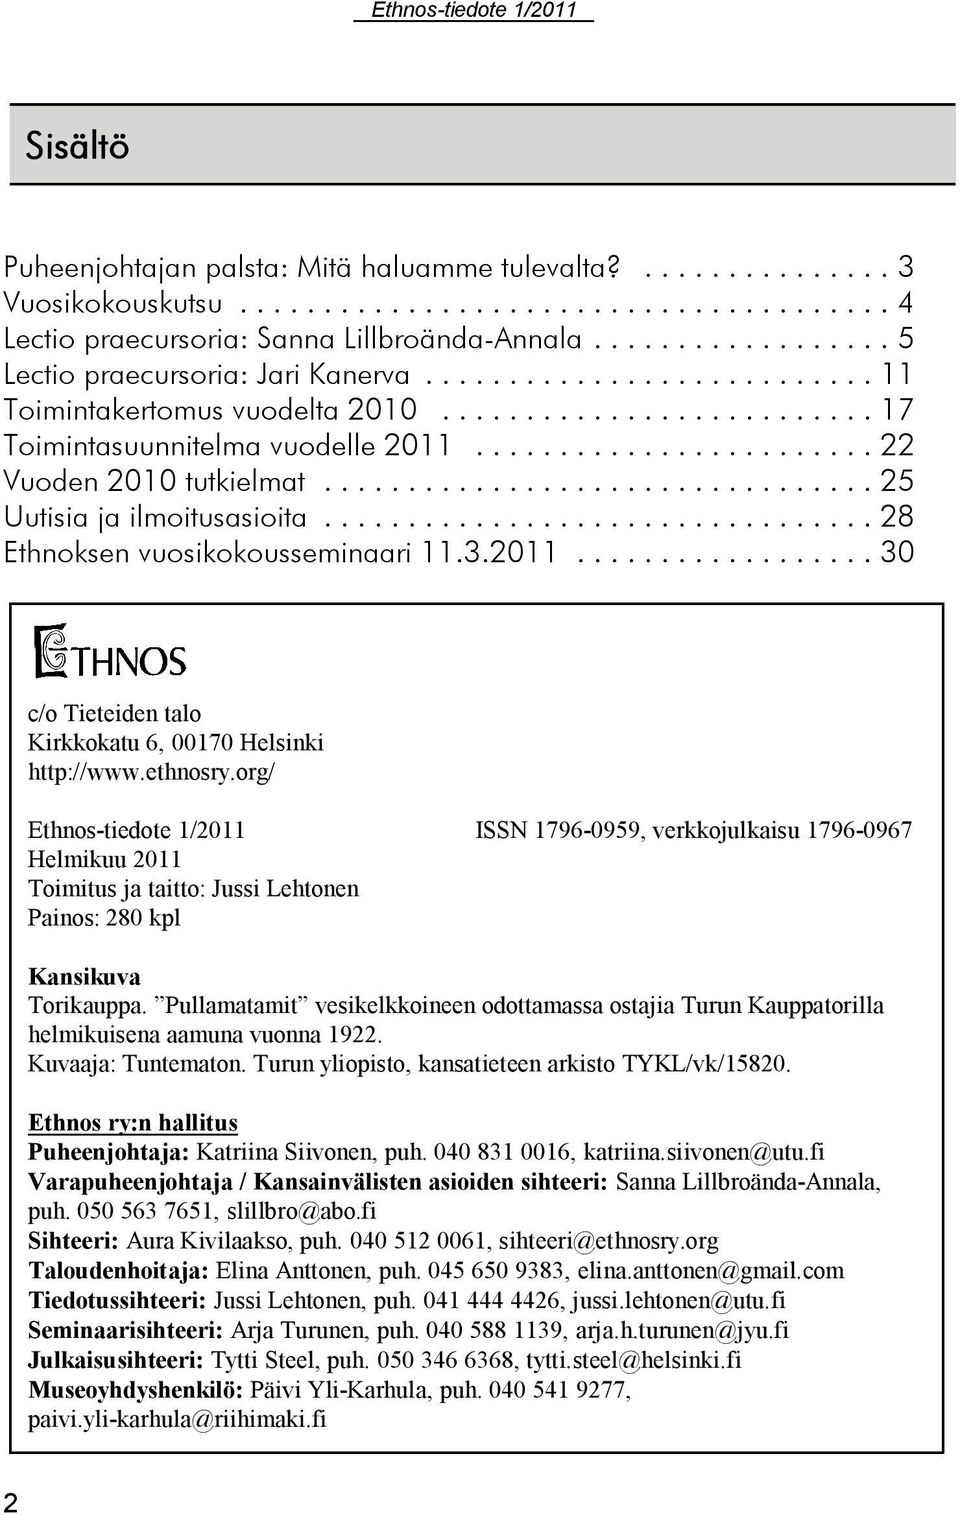 ethnosry.org/ Ethnos-tiedote 1/2011 ISSN 1796-0959, verkkojulkaisu 1796-0967 Helmikuu 2011 Toimitus ja taitto: Jussi Lehtonen Painos: 280 kpl Kansikuva Torikauppa.